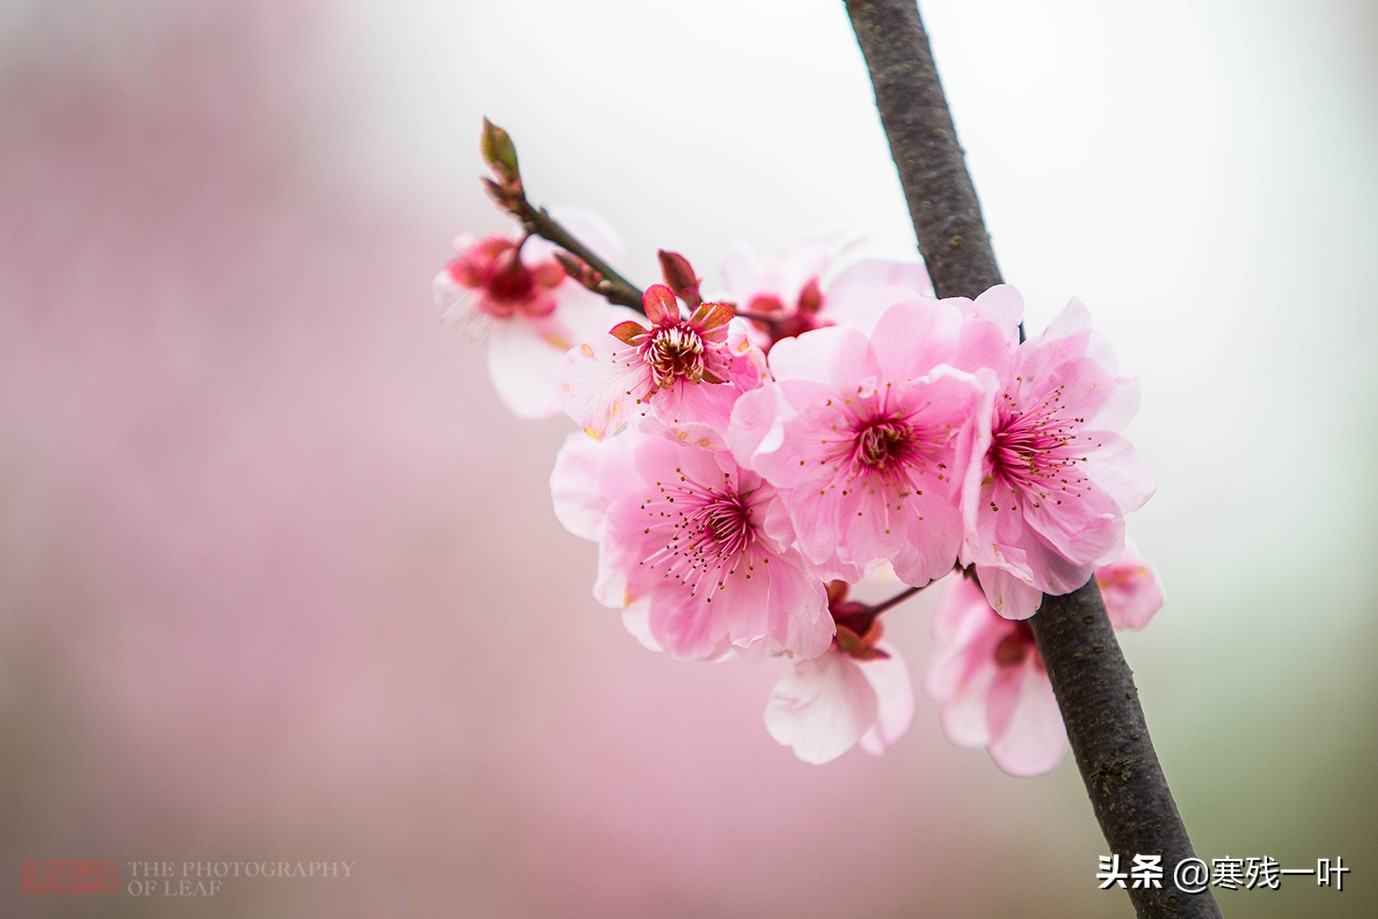 杭州最佳賞桃花的地方 個品種五千棵桃樹 就在市區趕緊收藏 寒殘一葉 Mdeditor